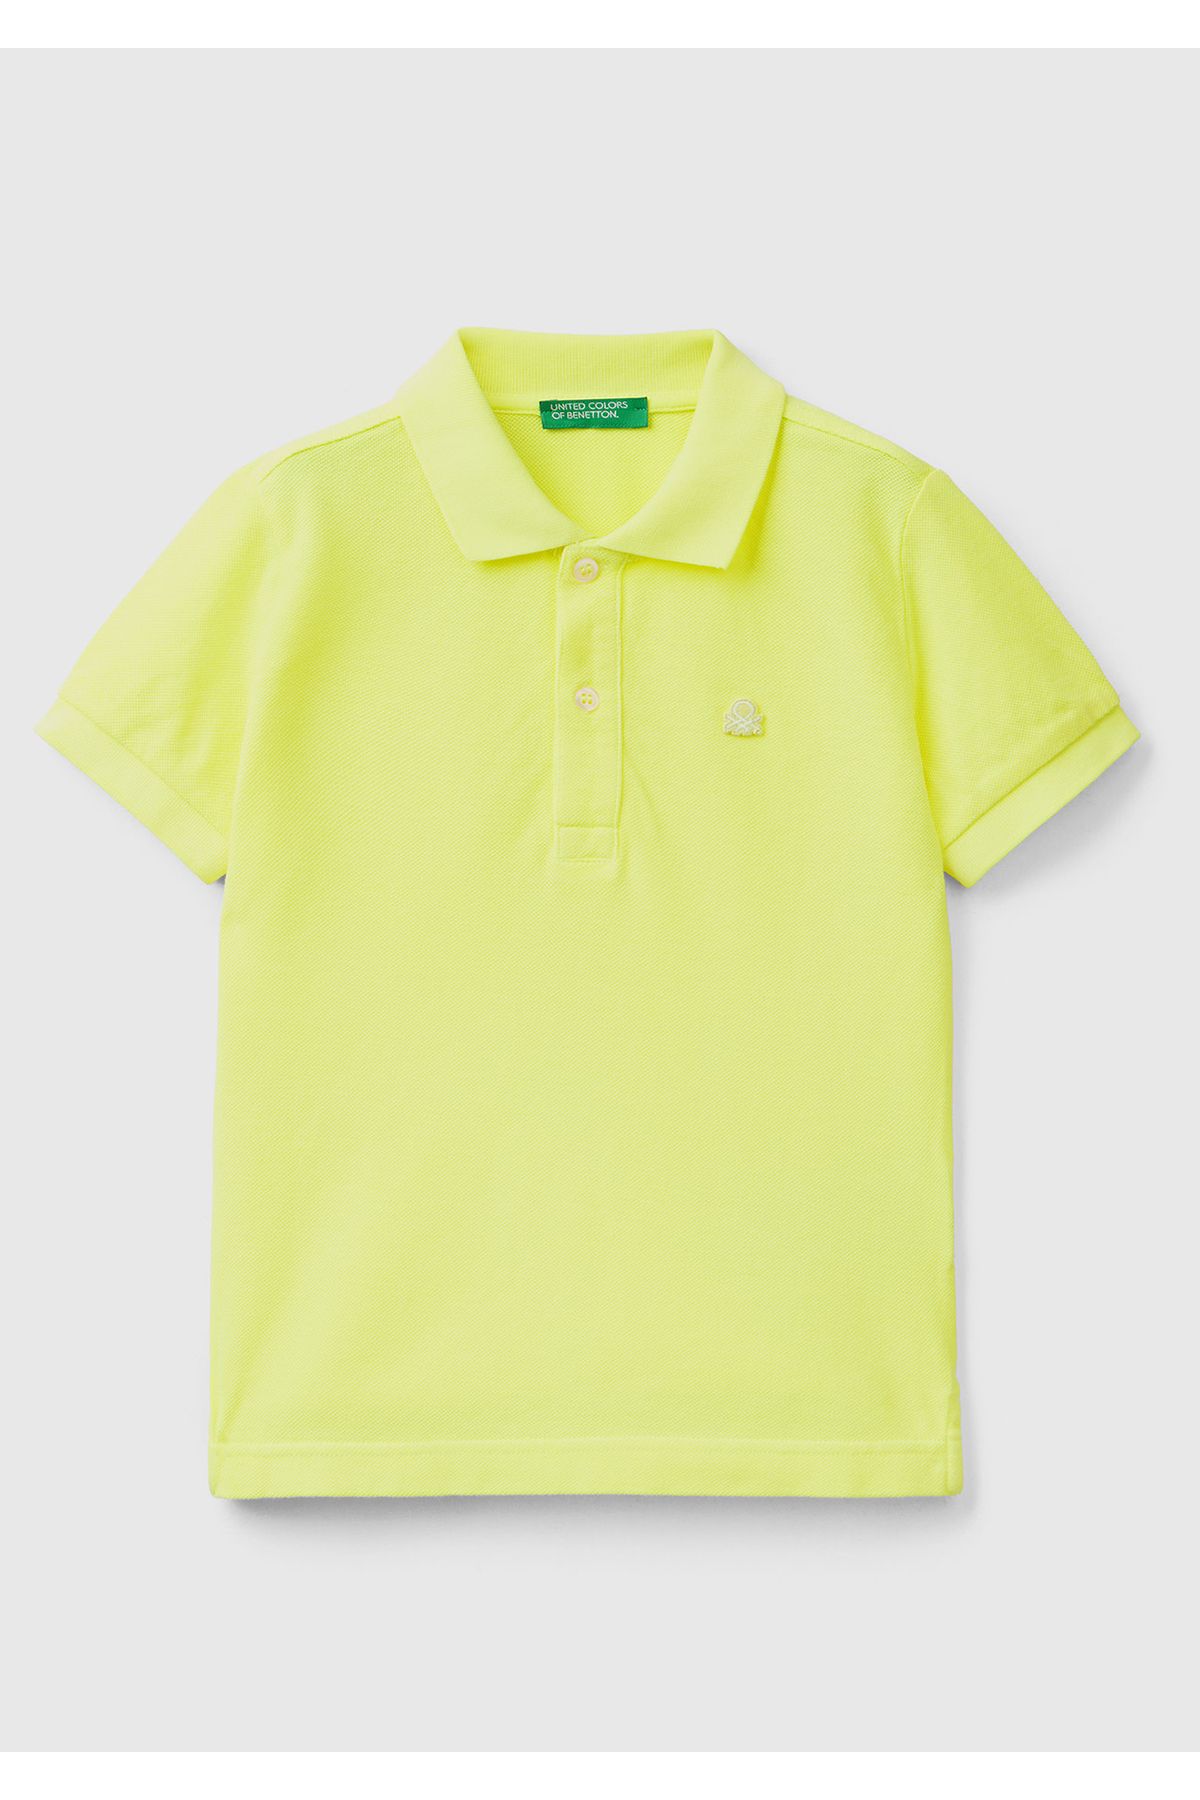 United Colors of Benetton Erkek Çocuk Fosforlu Sarı Logolu Neon Pike Polo T-Shirt